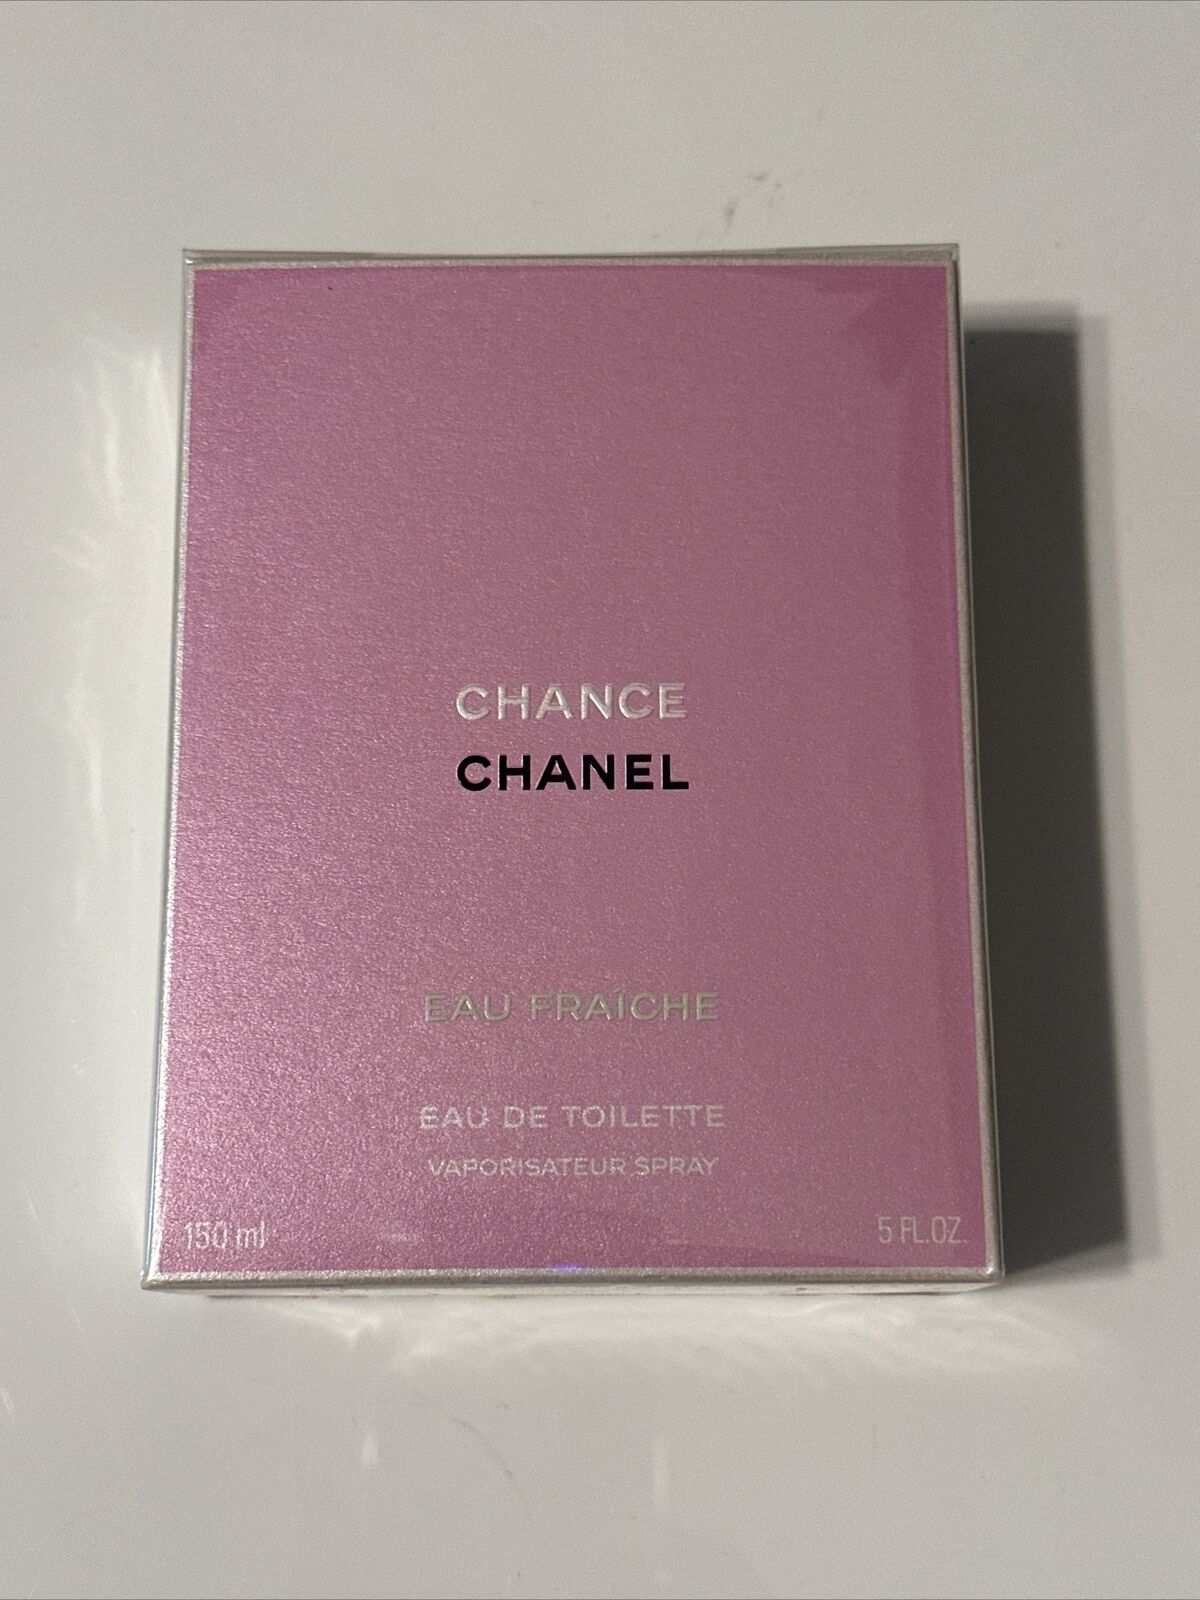 CHANEL Chance Eau Fraîche for Women 3.4 fl oz Eau de Toilette Spray for  sale online